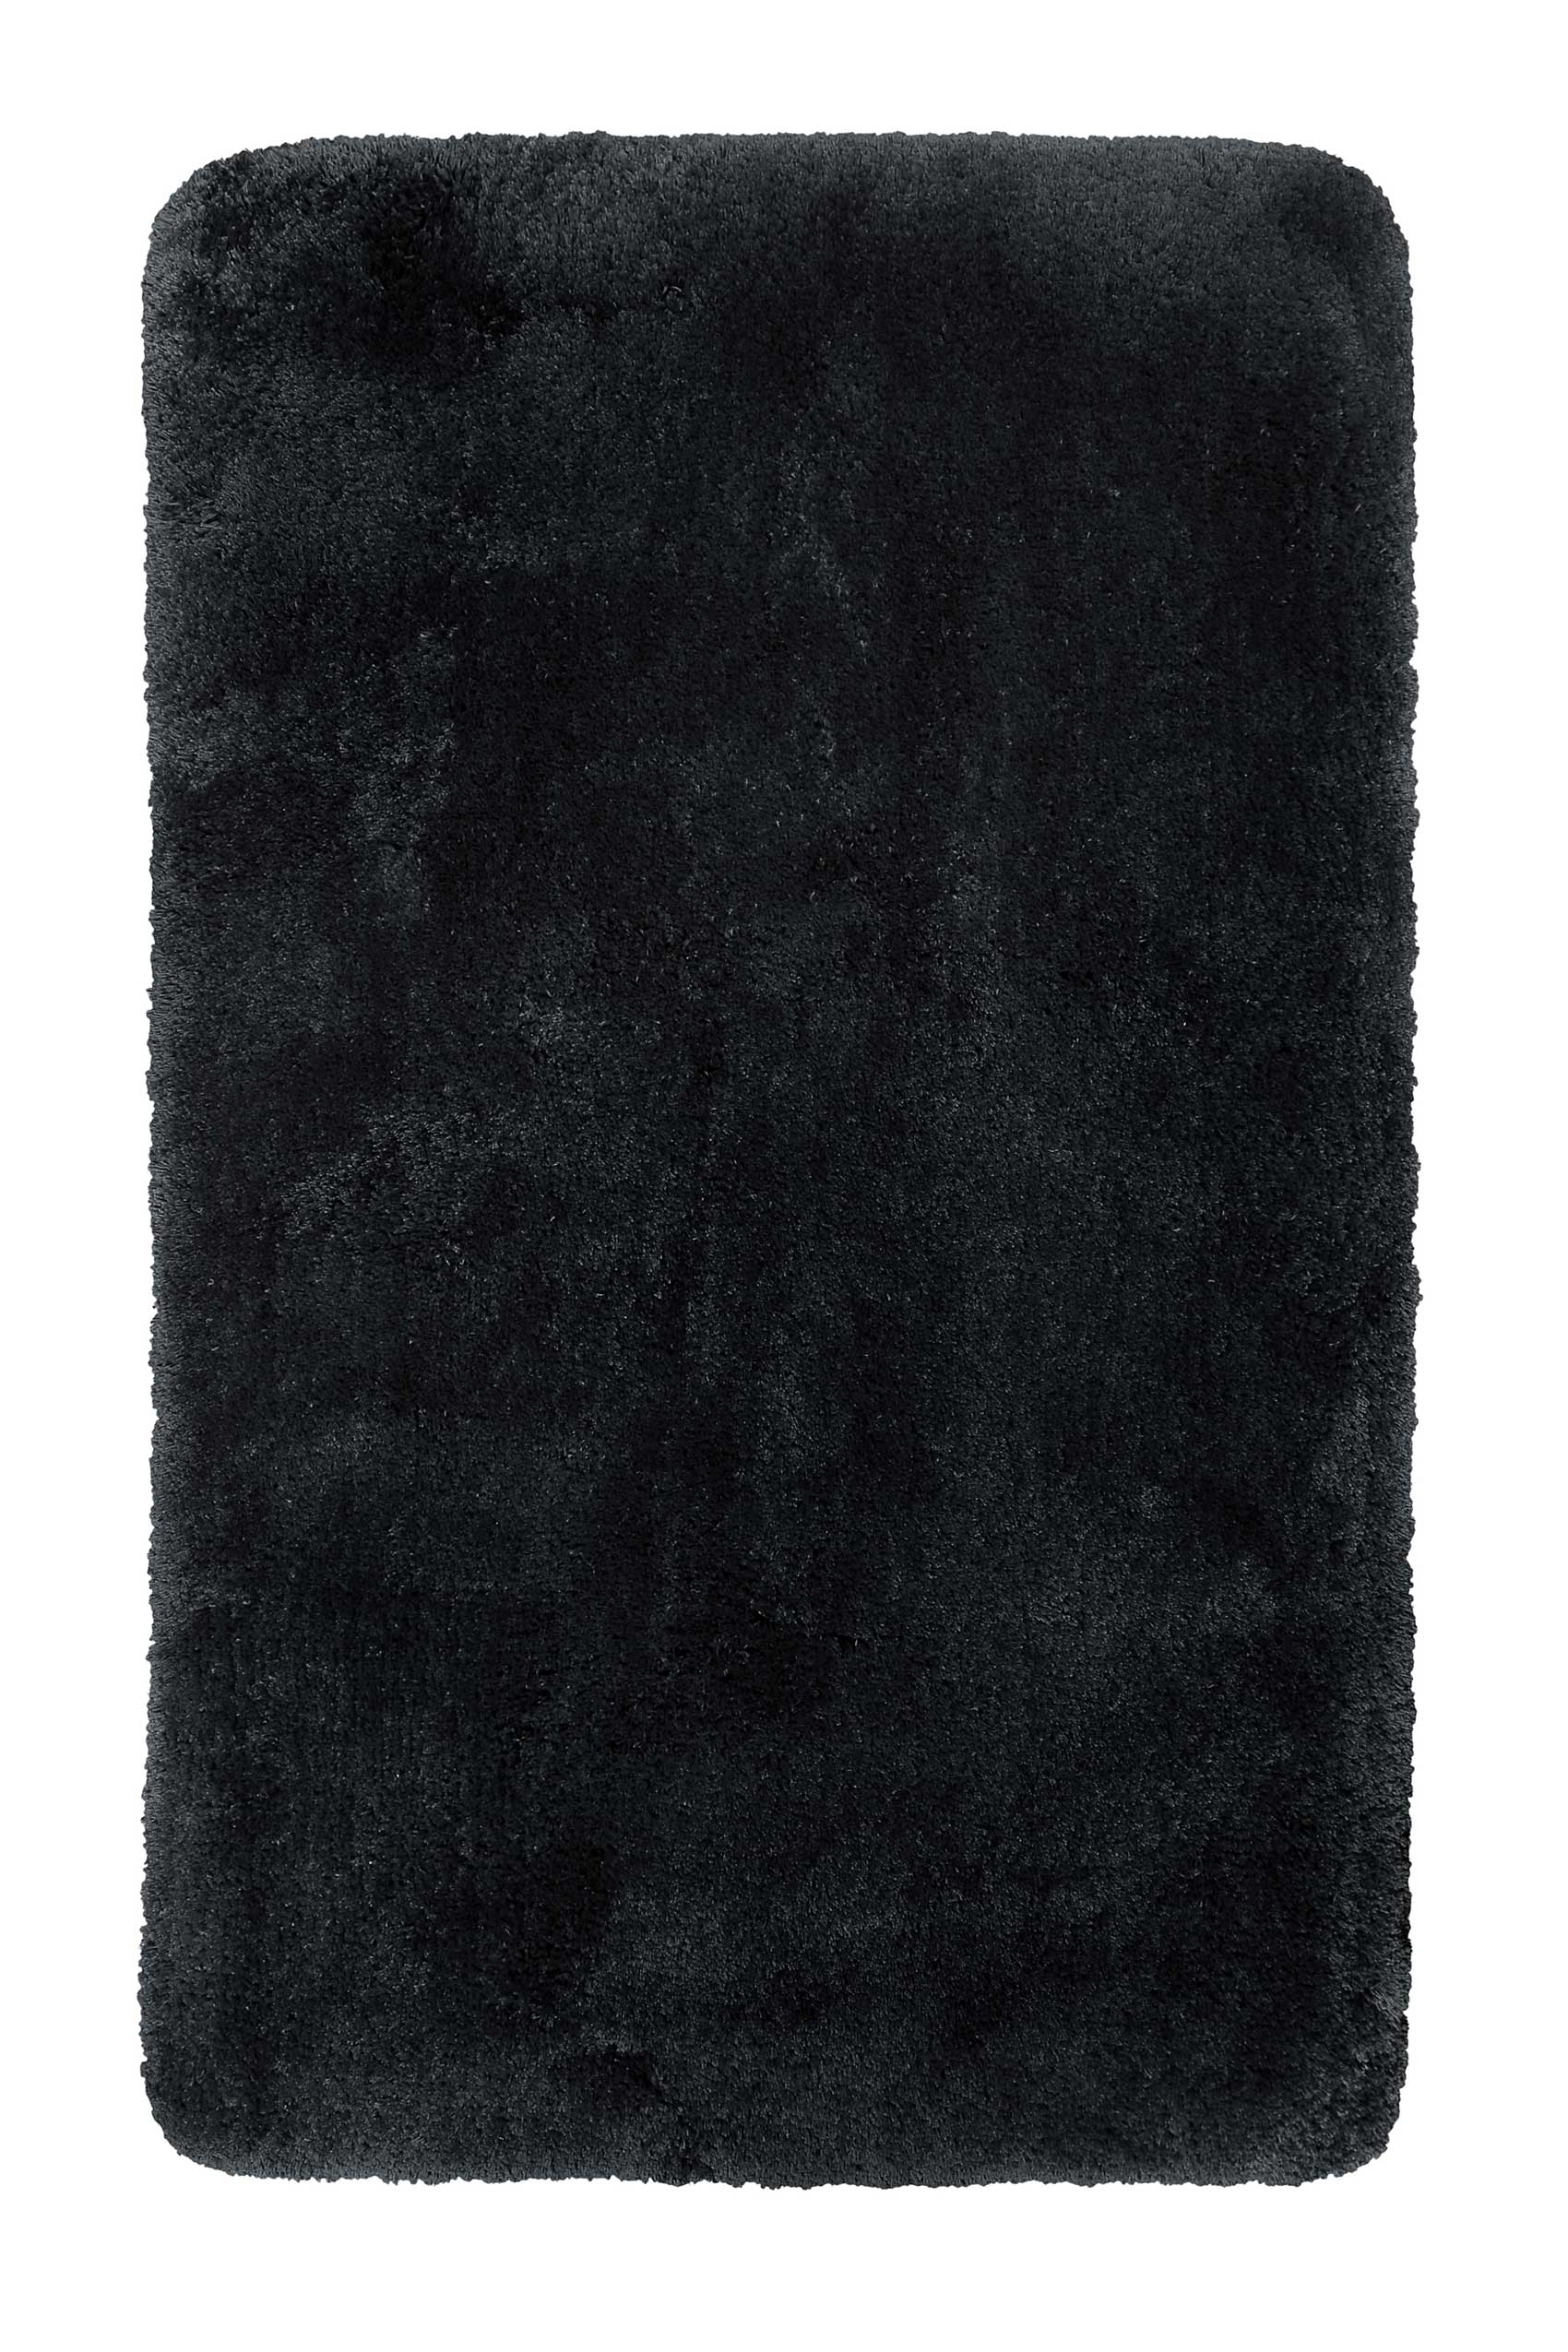 tapis de bain microfibre très doux uni noir 70x120